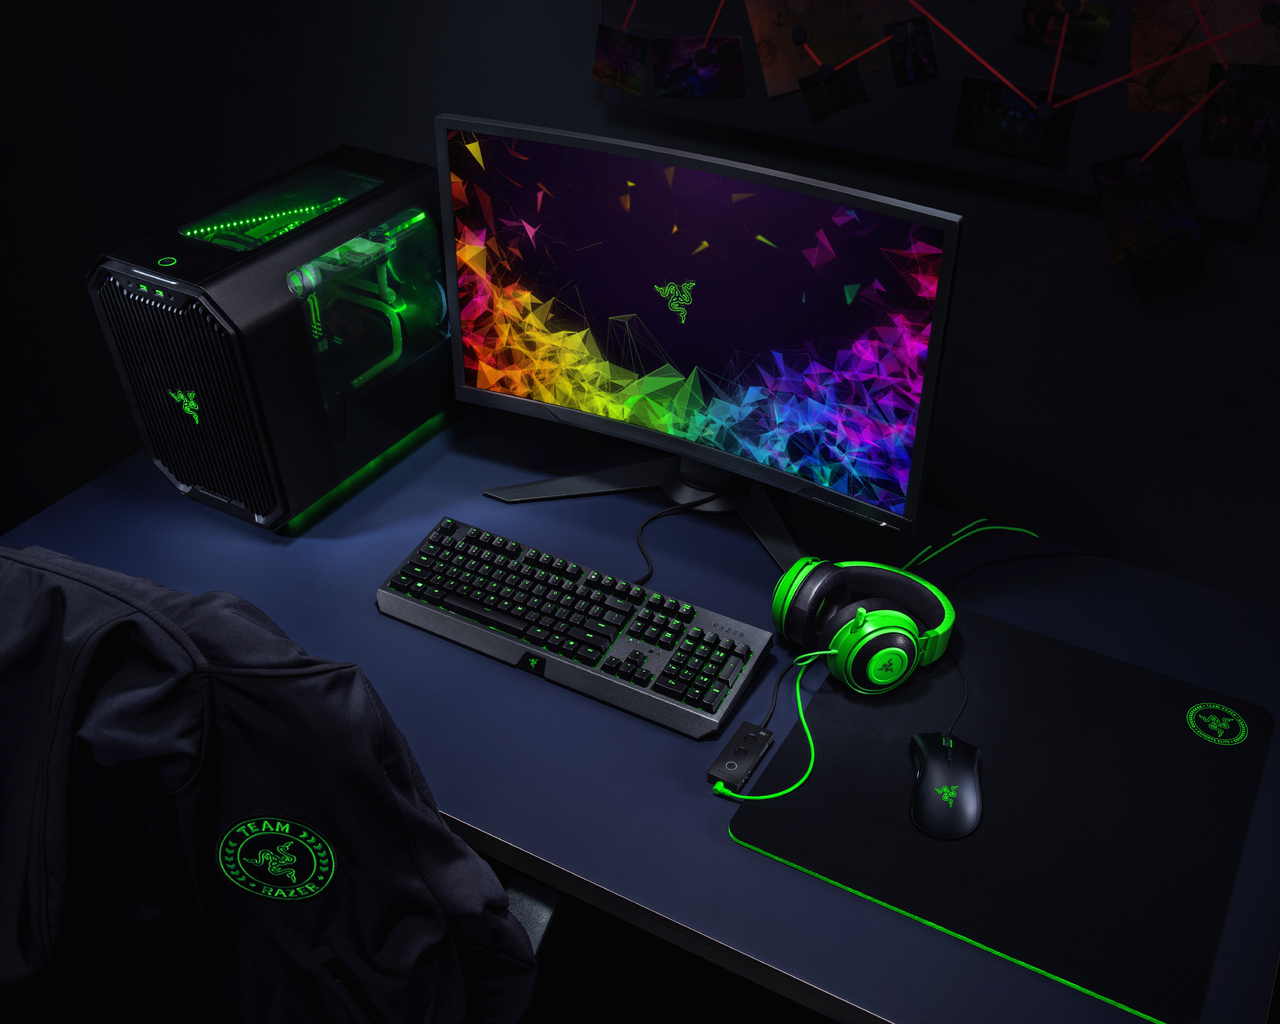 Với Razer Gaming Setup, bạn sẽ trải nghiệm một không gian chơi game đầy sắc màu và chuyên nghiệp. Bộ máy tính tối ưu hóa cho game, bàn phím, chuột và tai nghe giúp bạn vô cùng thoải mái trong từng ván đấu.